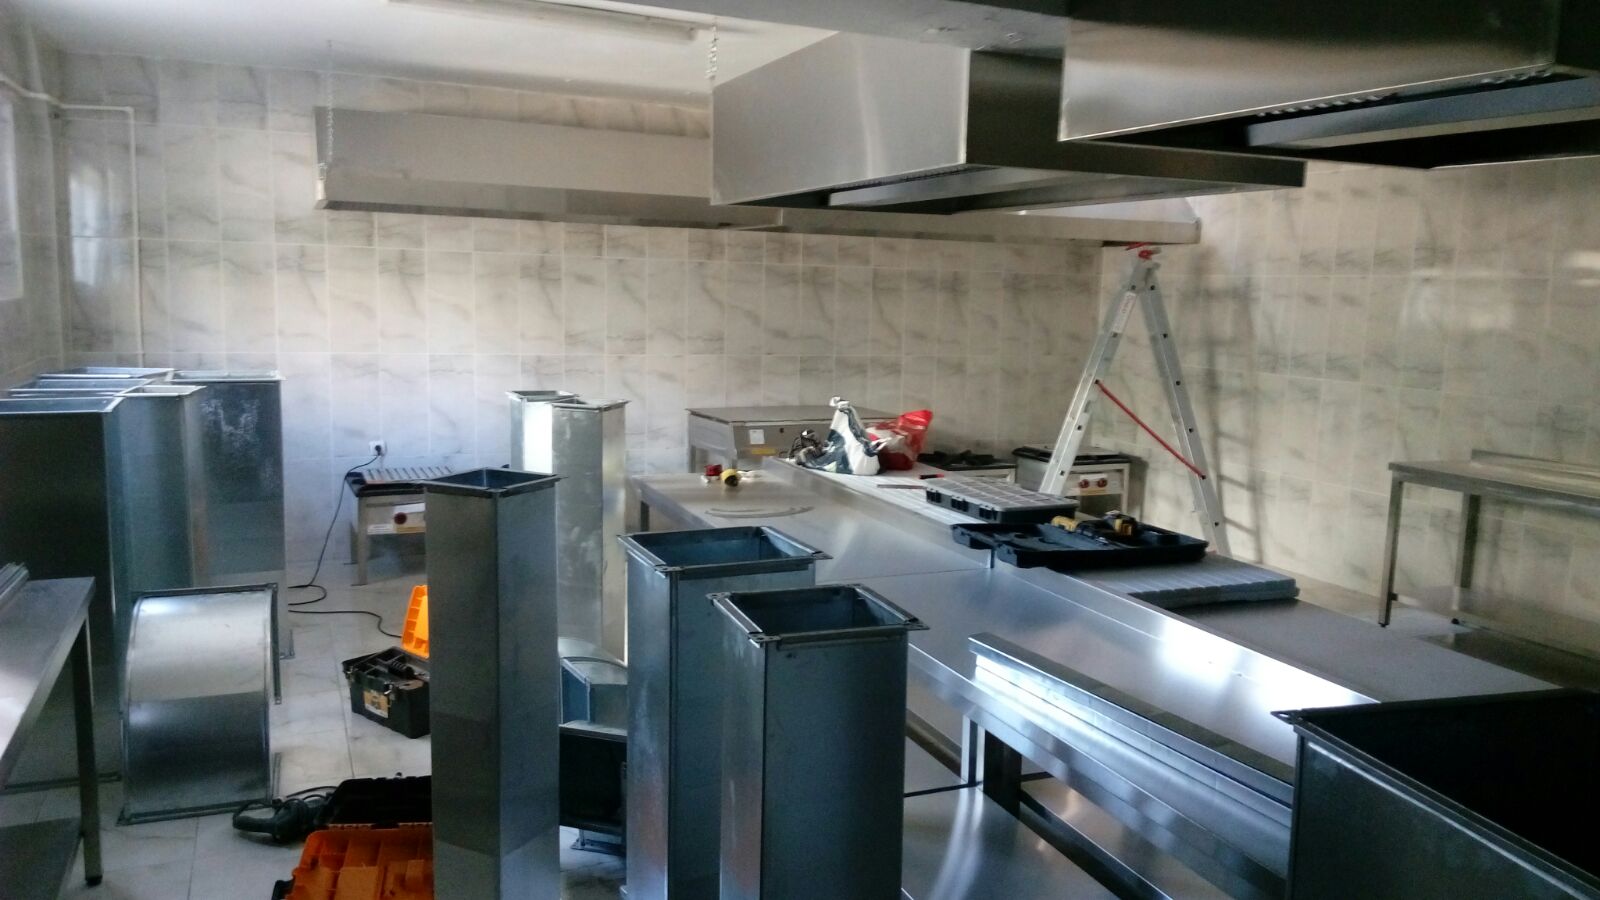   Lokanta restaurantlar ögrenci yurdu mutfagi yemekhane inox endüstriyel mutfak ürünleri havalandirma sistemi kanali ankara 0549 549 76 09